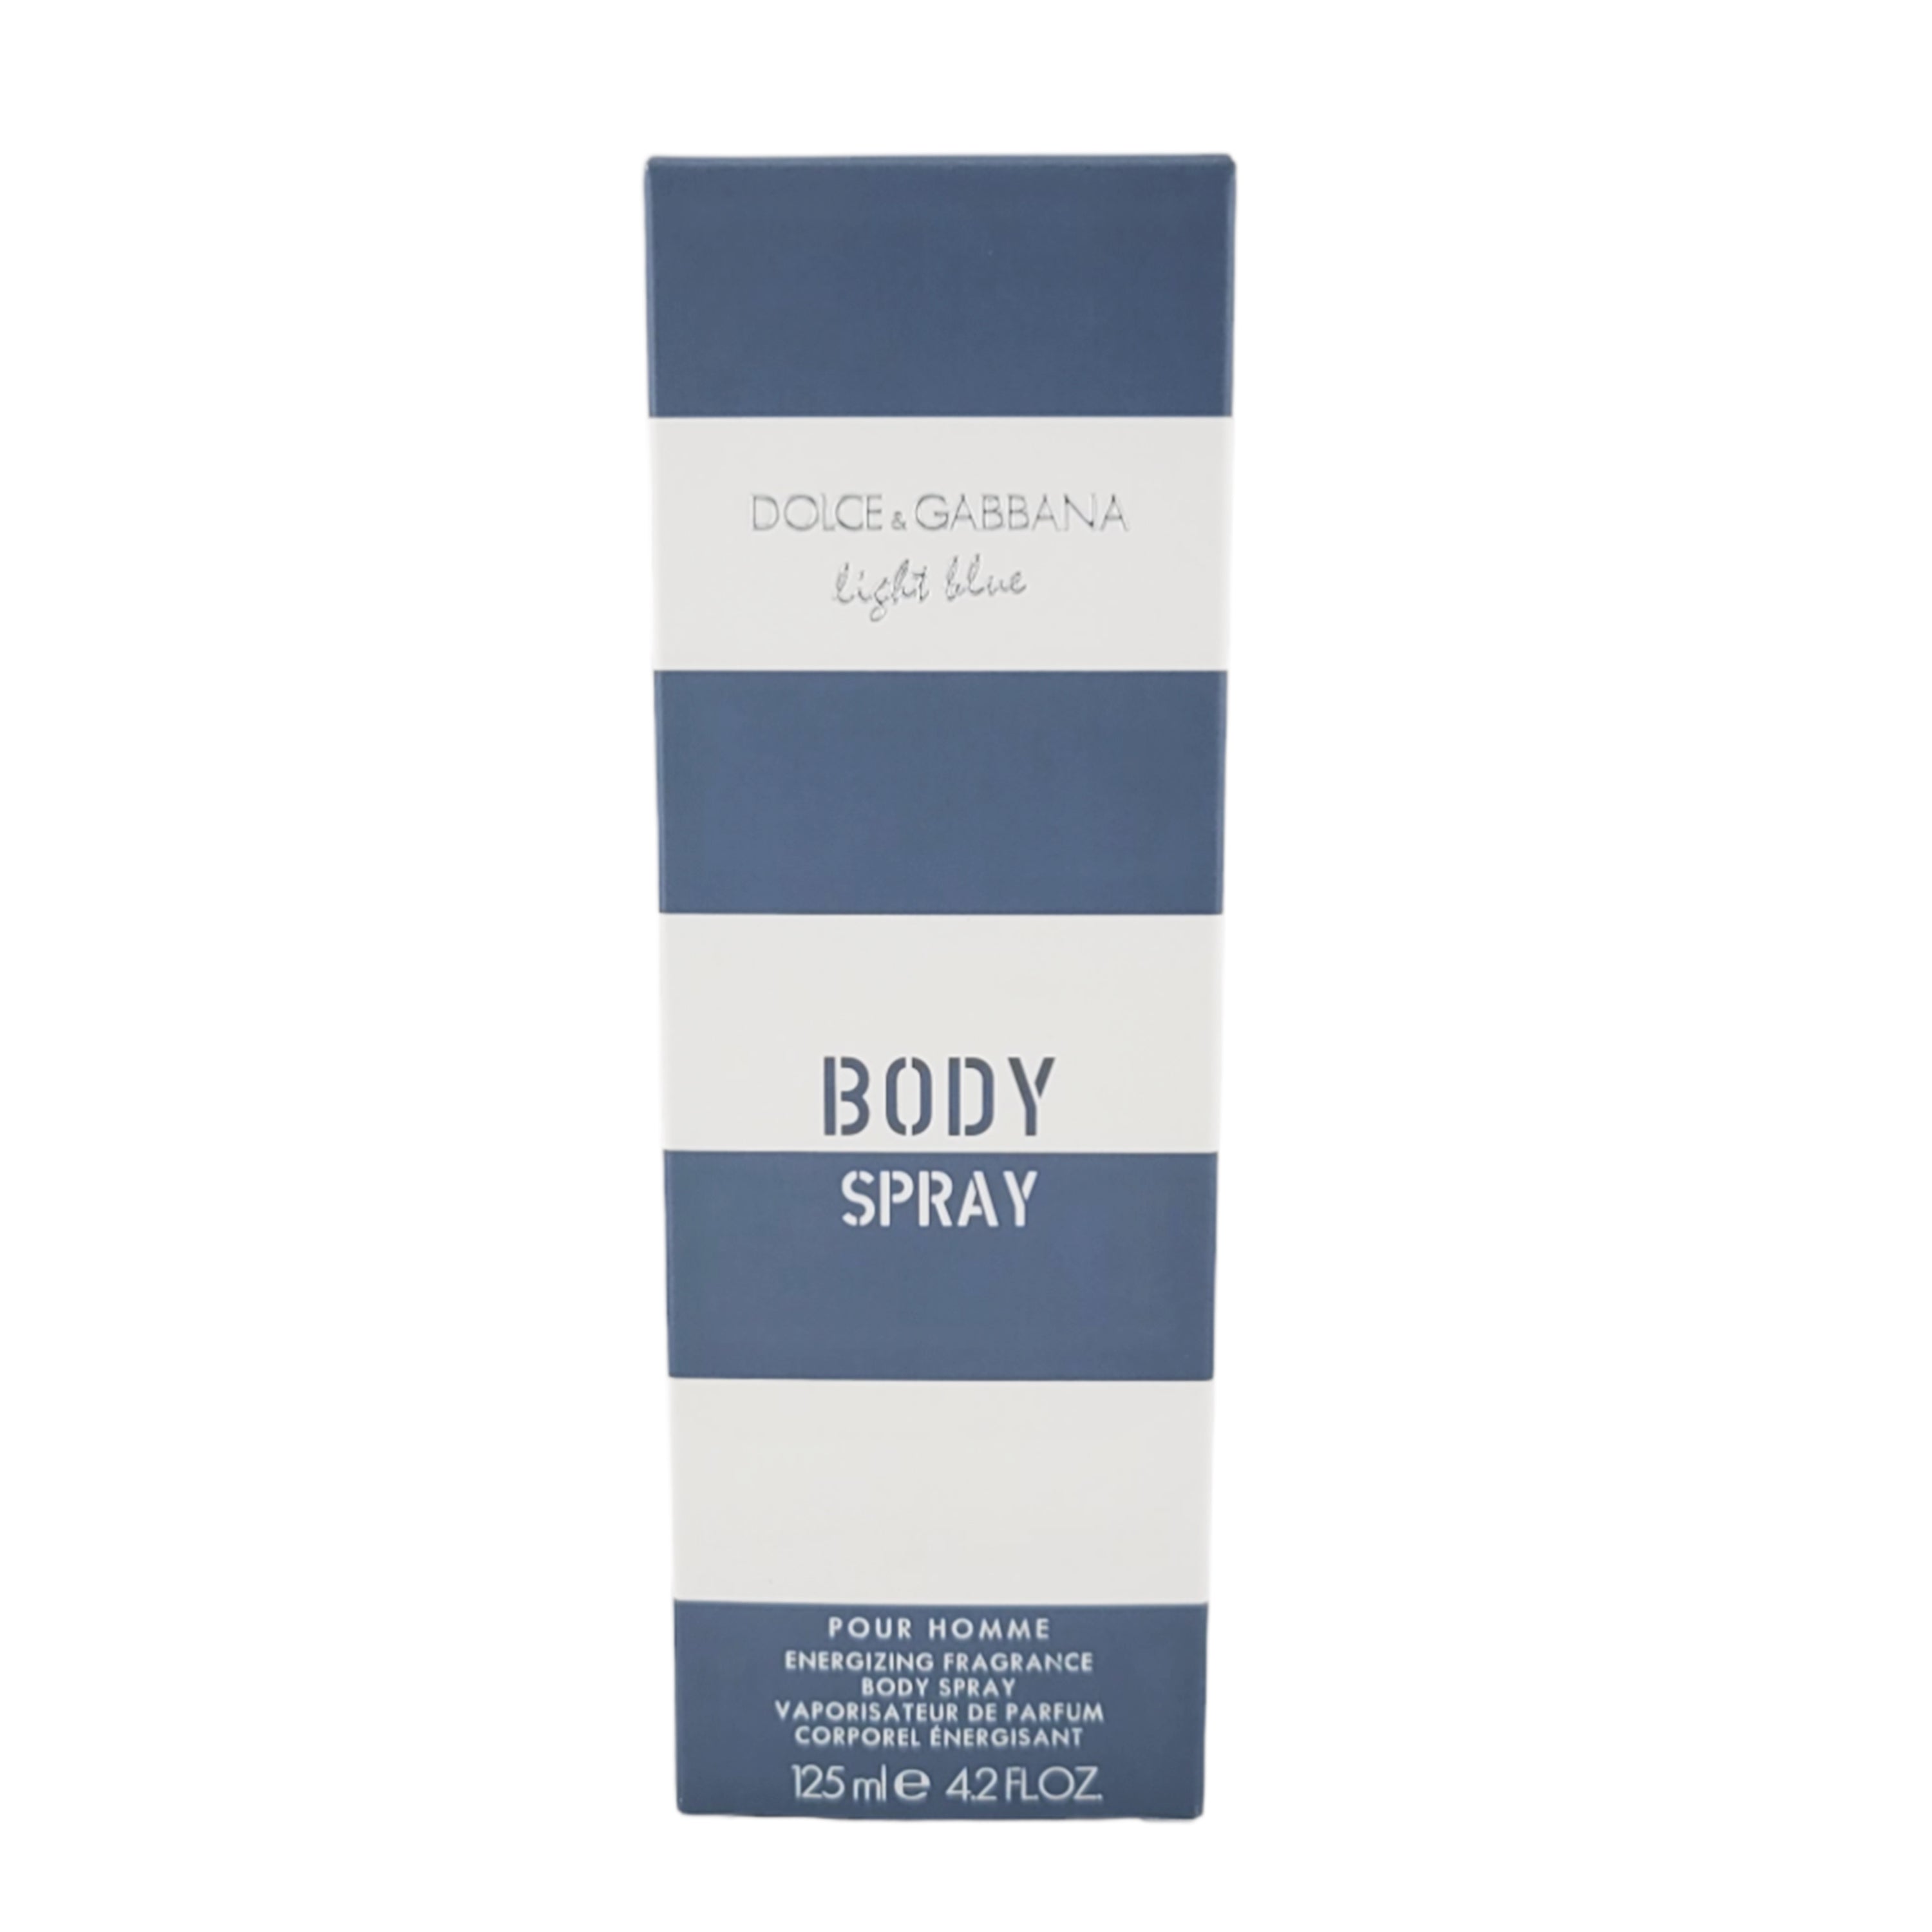 Dolce & Gabbana Light Blue Body Spray for Men